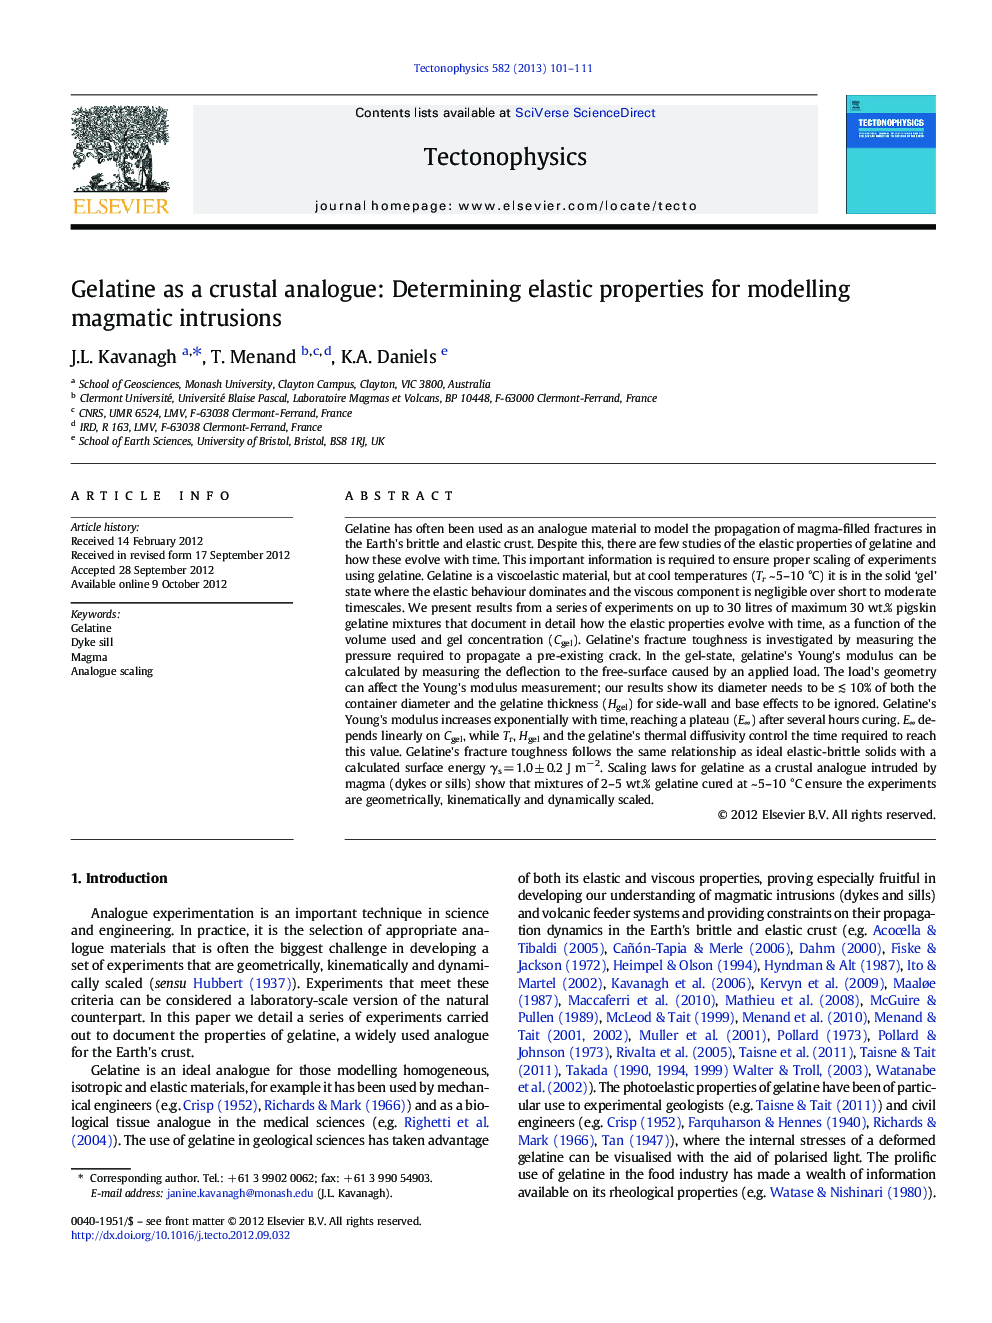 ژلاتین به عنوان یک آنالوگ پوسته: تعیین خواص الاستیک برای مدل سازی ورودی های ماگمایی 